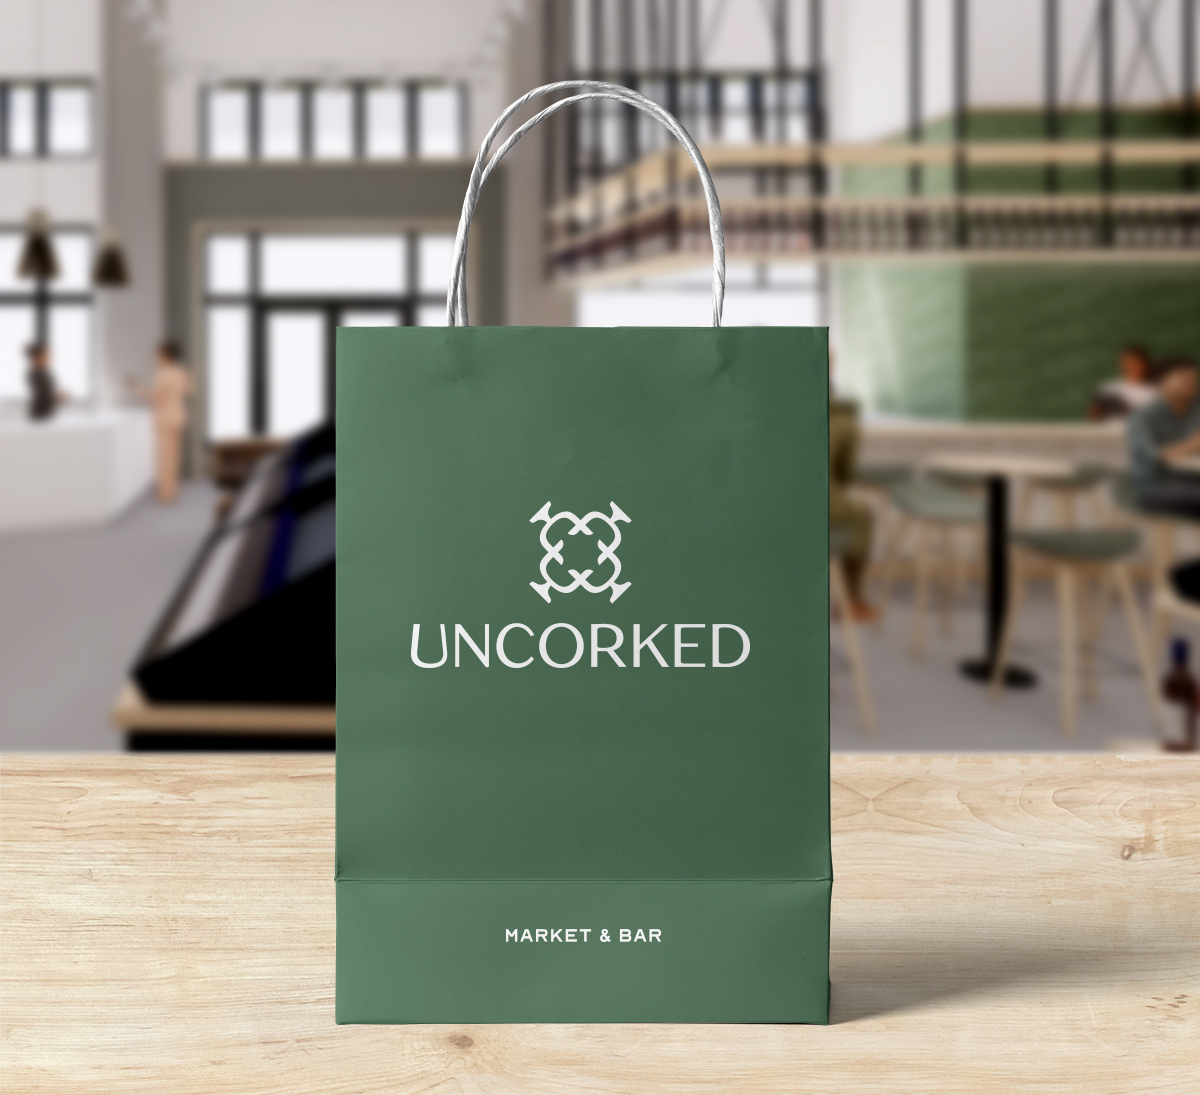 wine bar branding on green shopping bag